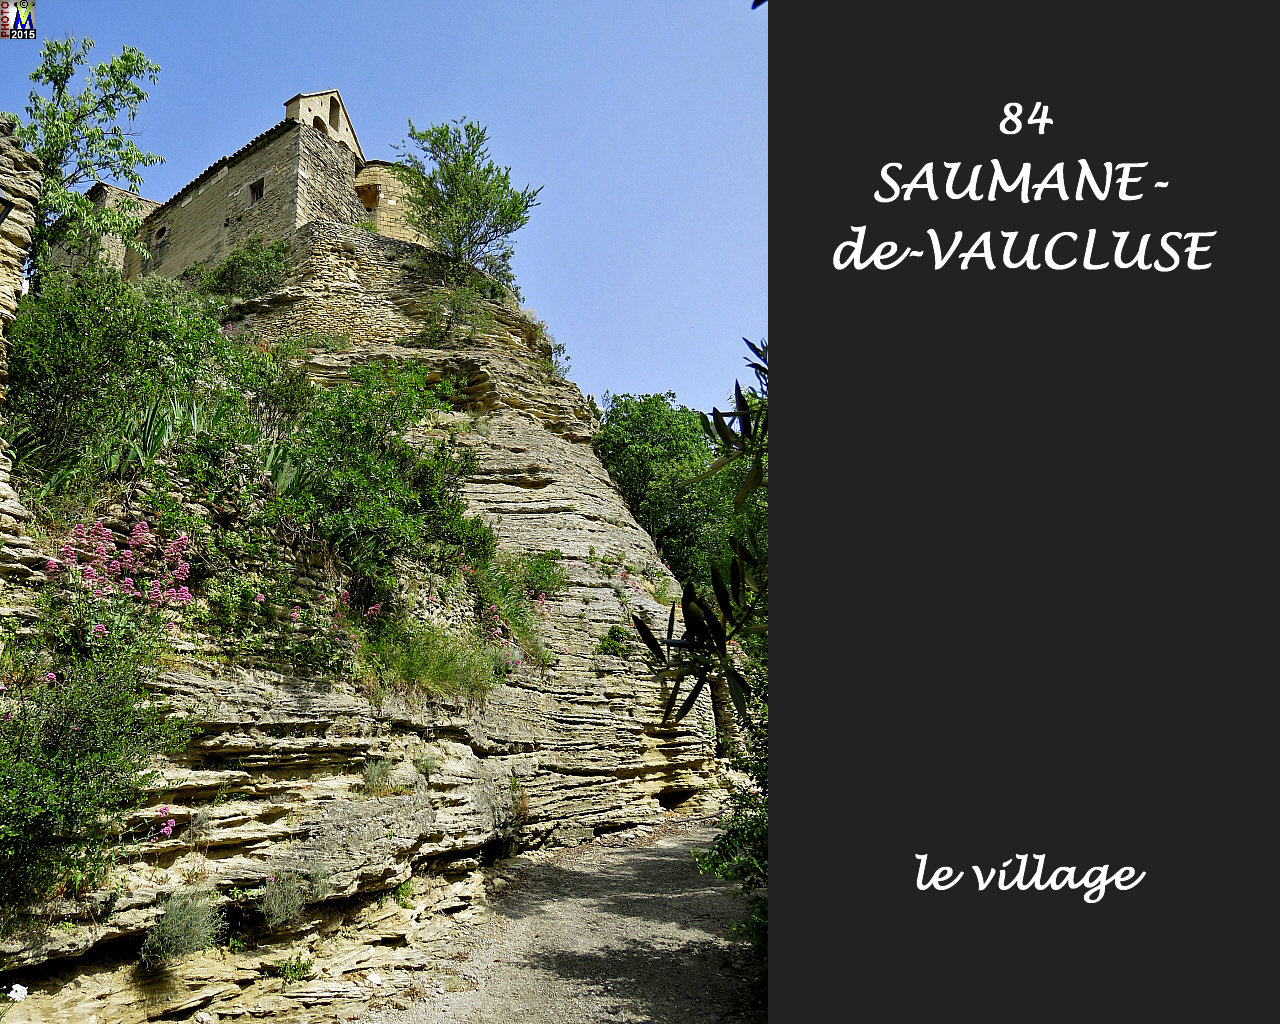 84SAUMANE-VAUCLUSE_village_102.jpg